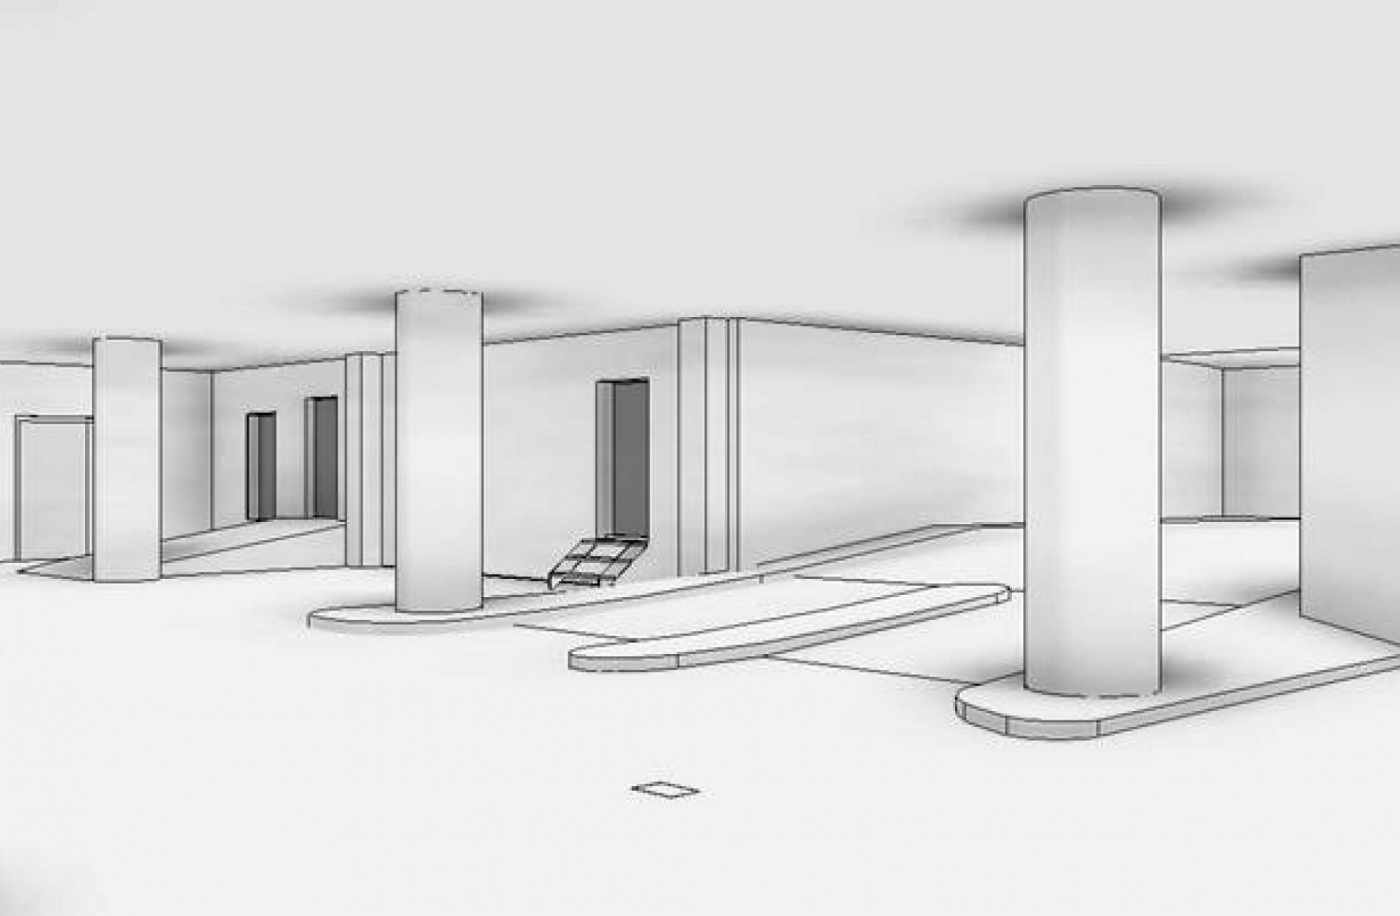 Tivoli Parkhaus, 3D Laserscan, 3D- / BIM- Modellierung aus Punktwolke, 2D Pläne aus 3D Modell generieren